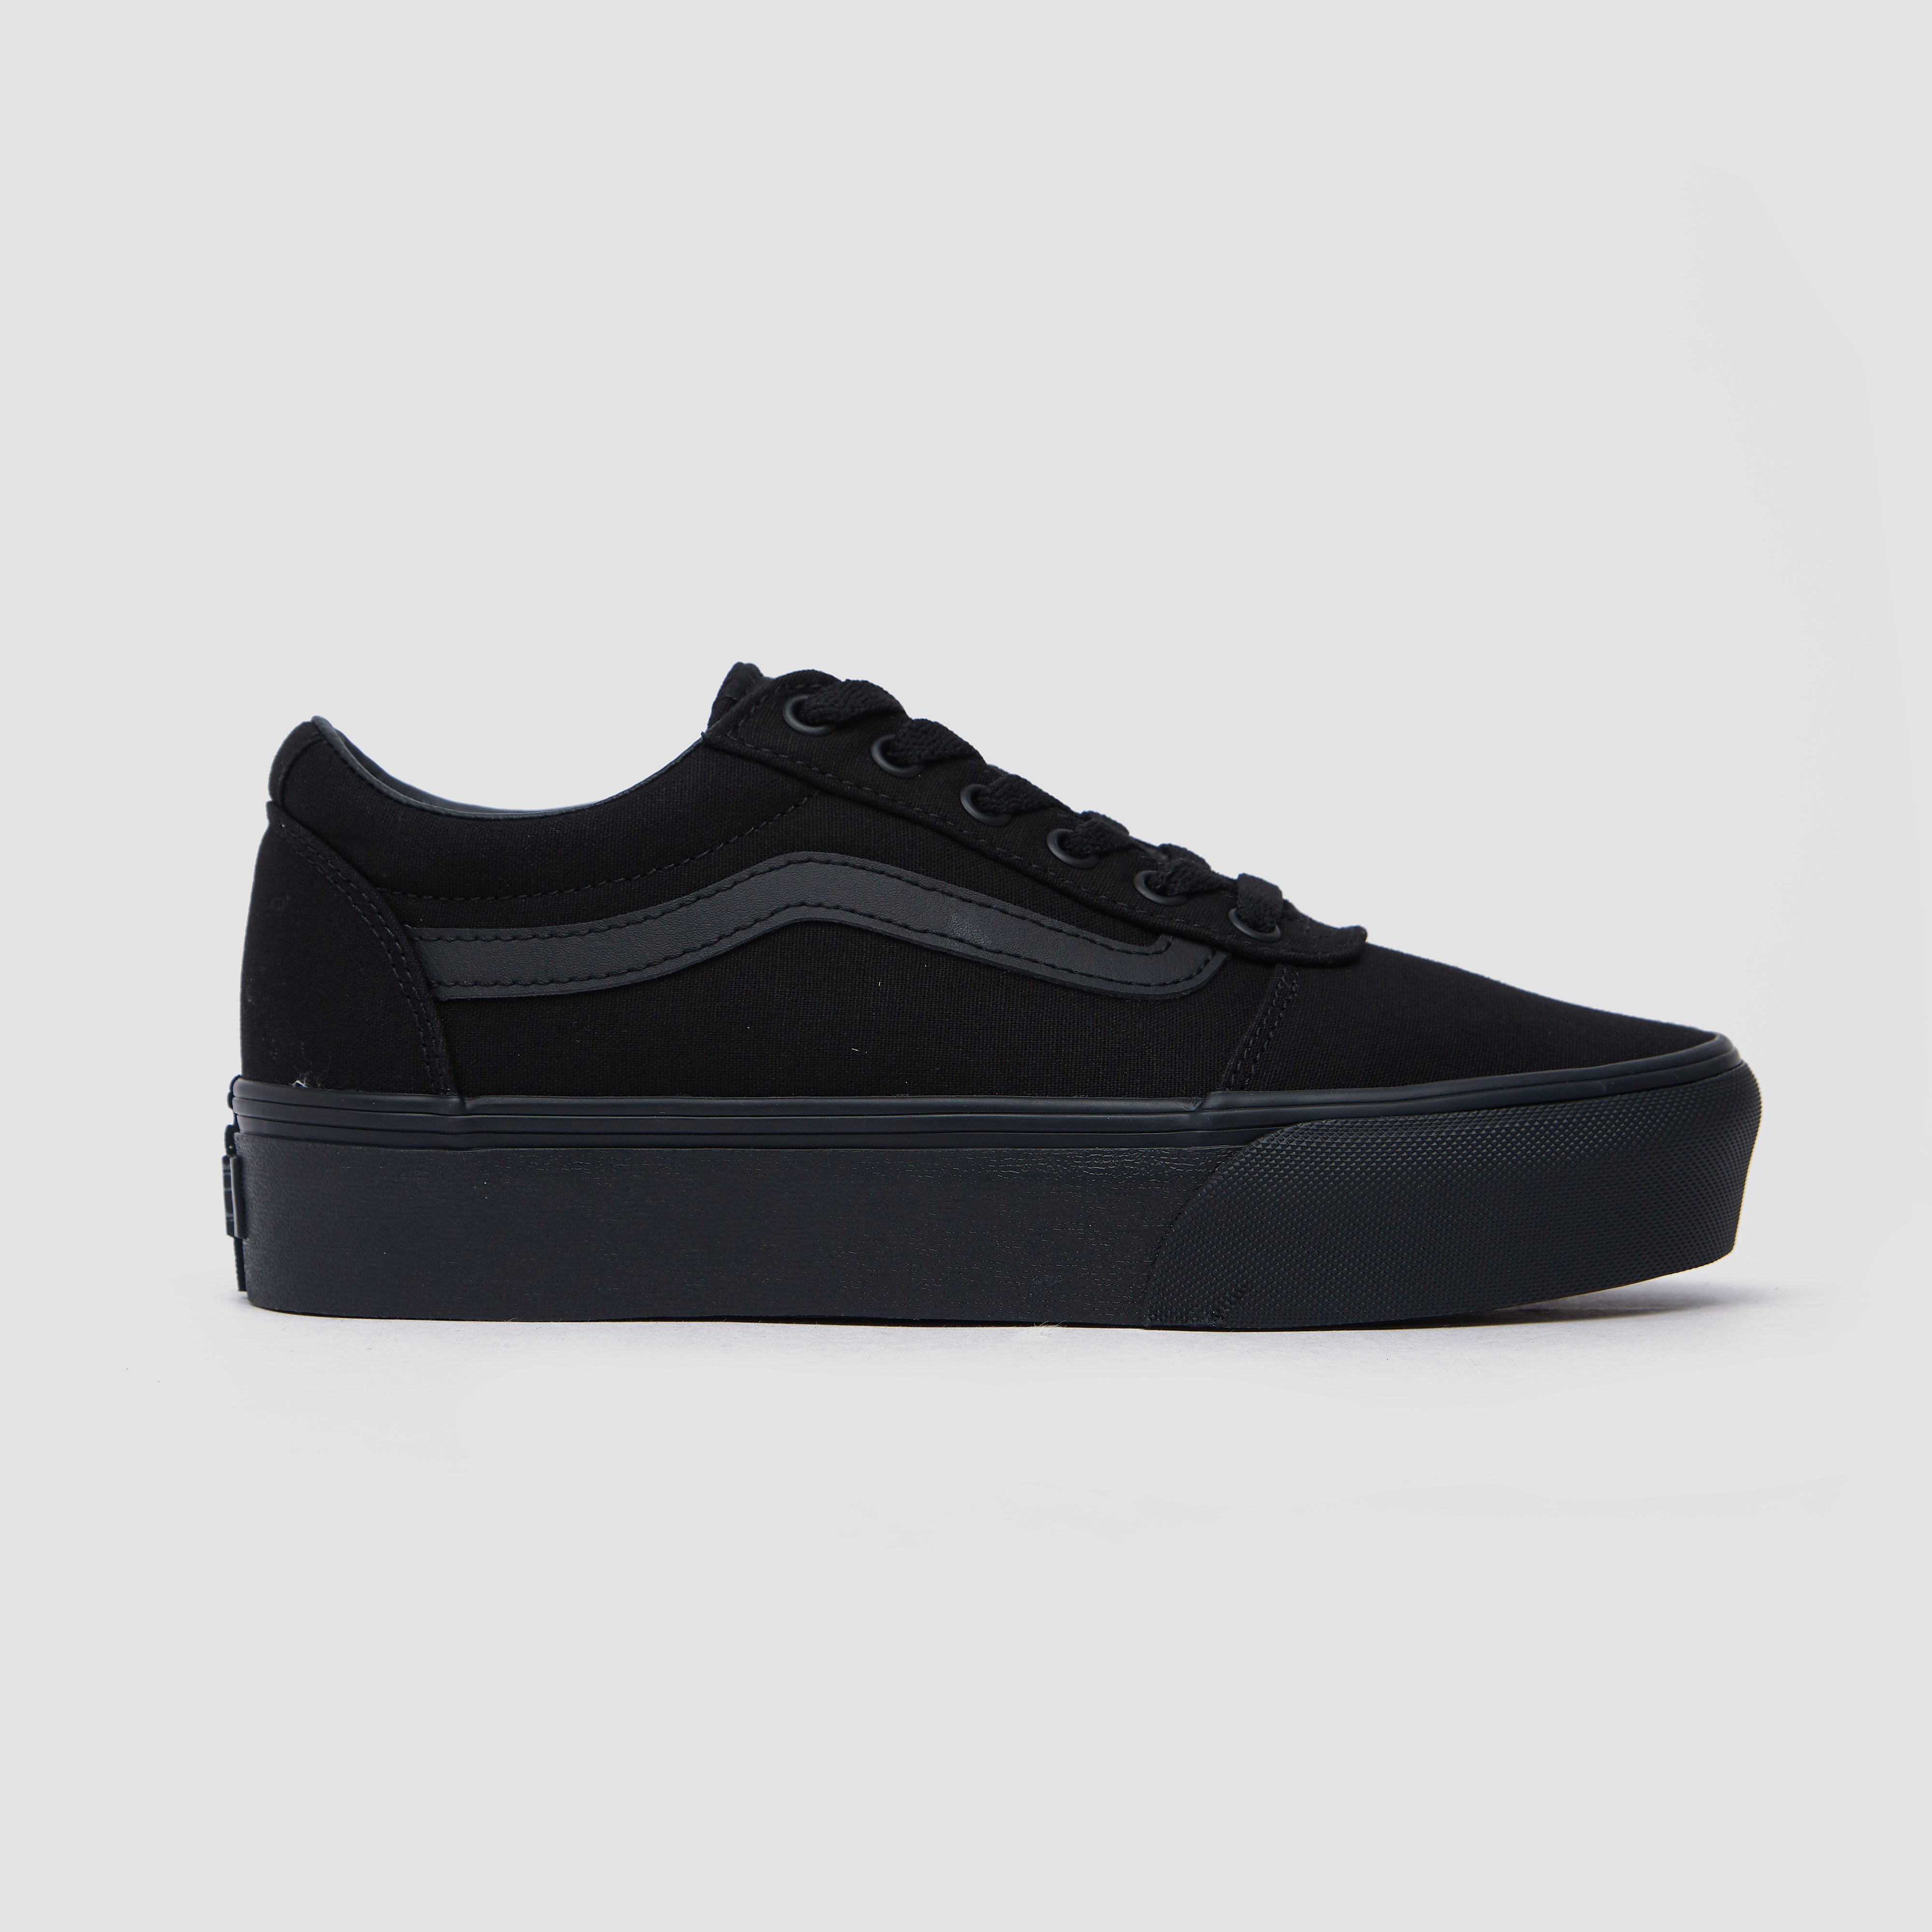 Vans Ward Platform Dames Sneakers - (Canvas) Black/Black - Maat 36